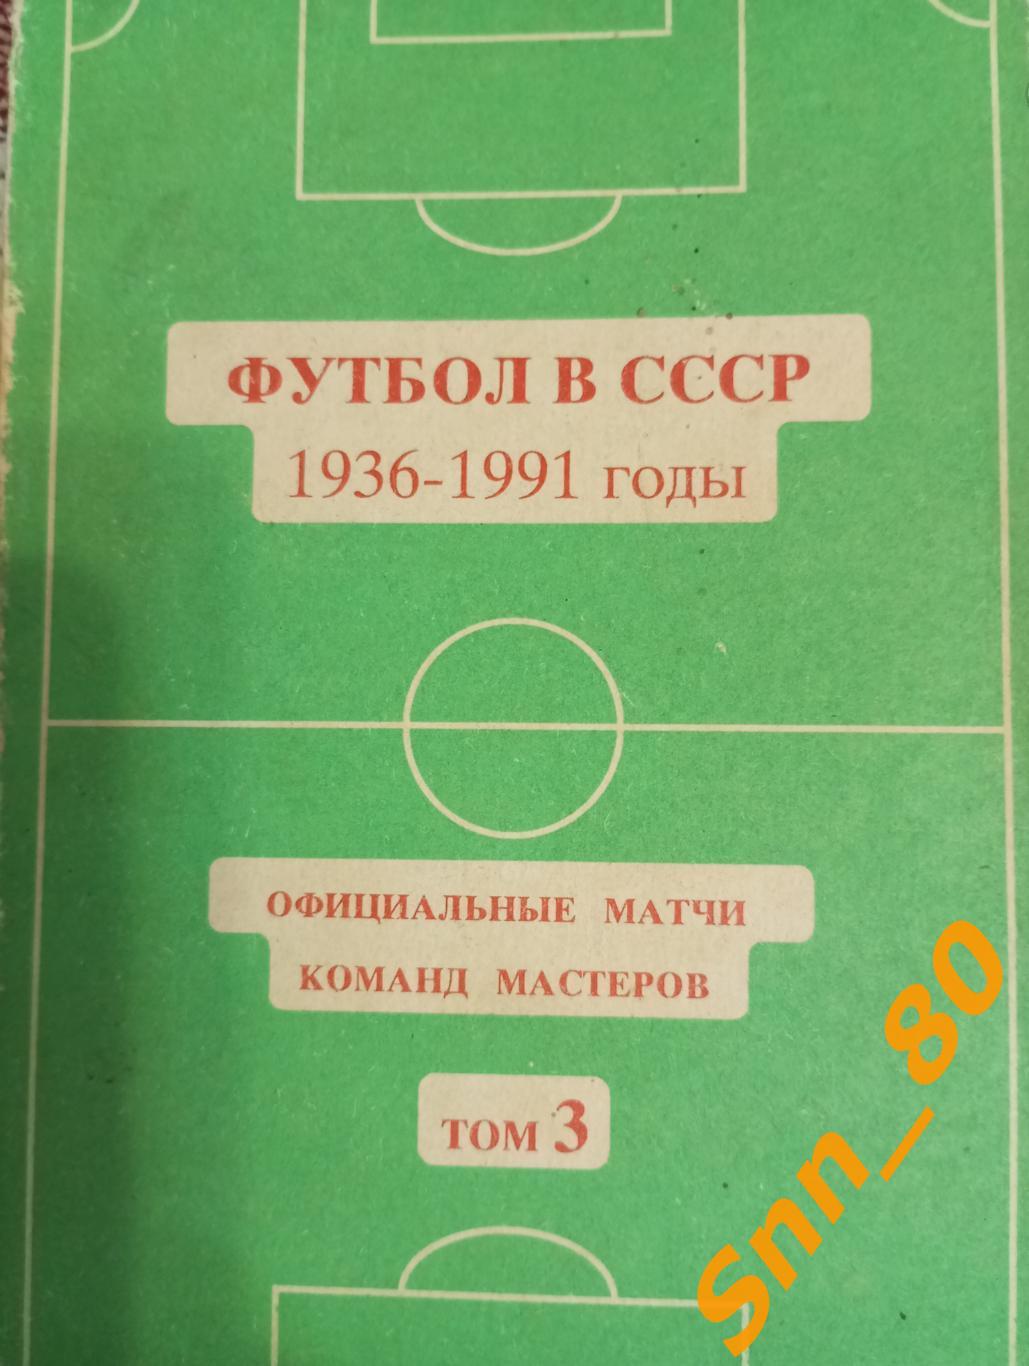 Футбол в СССР 1936-1991 том 3 официальные матчи команд мастеров 1978-1991